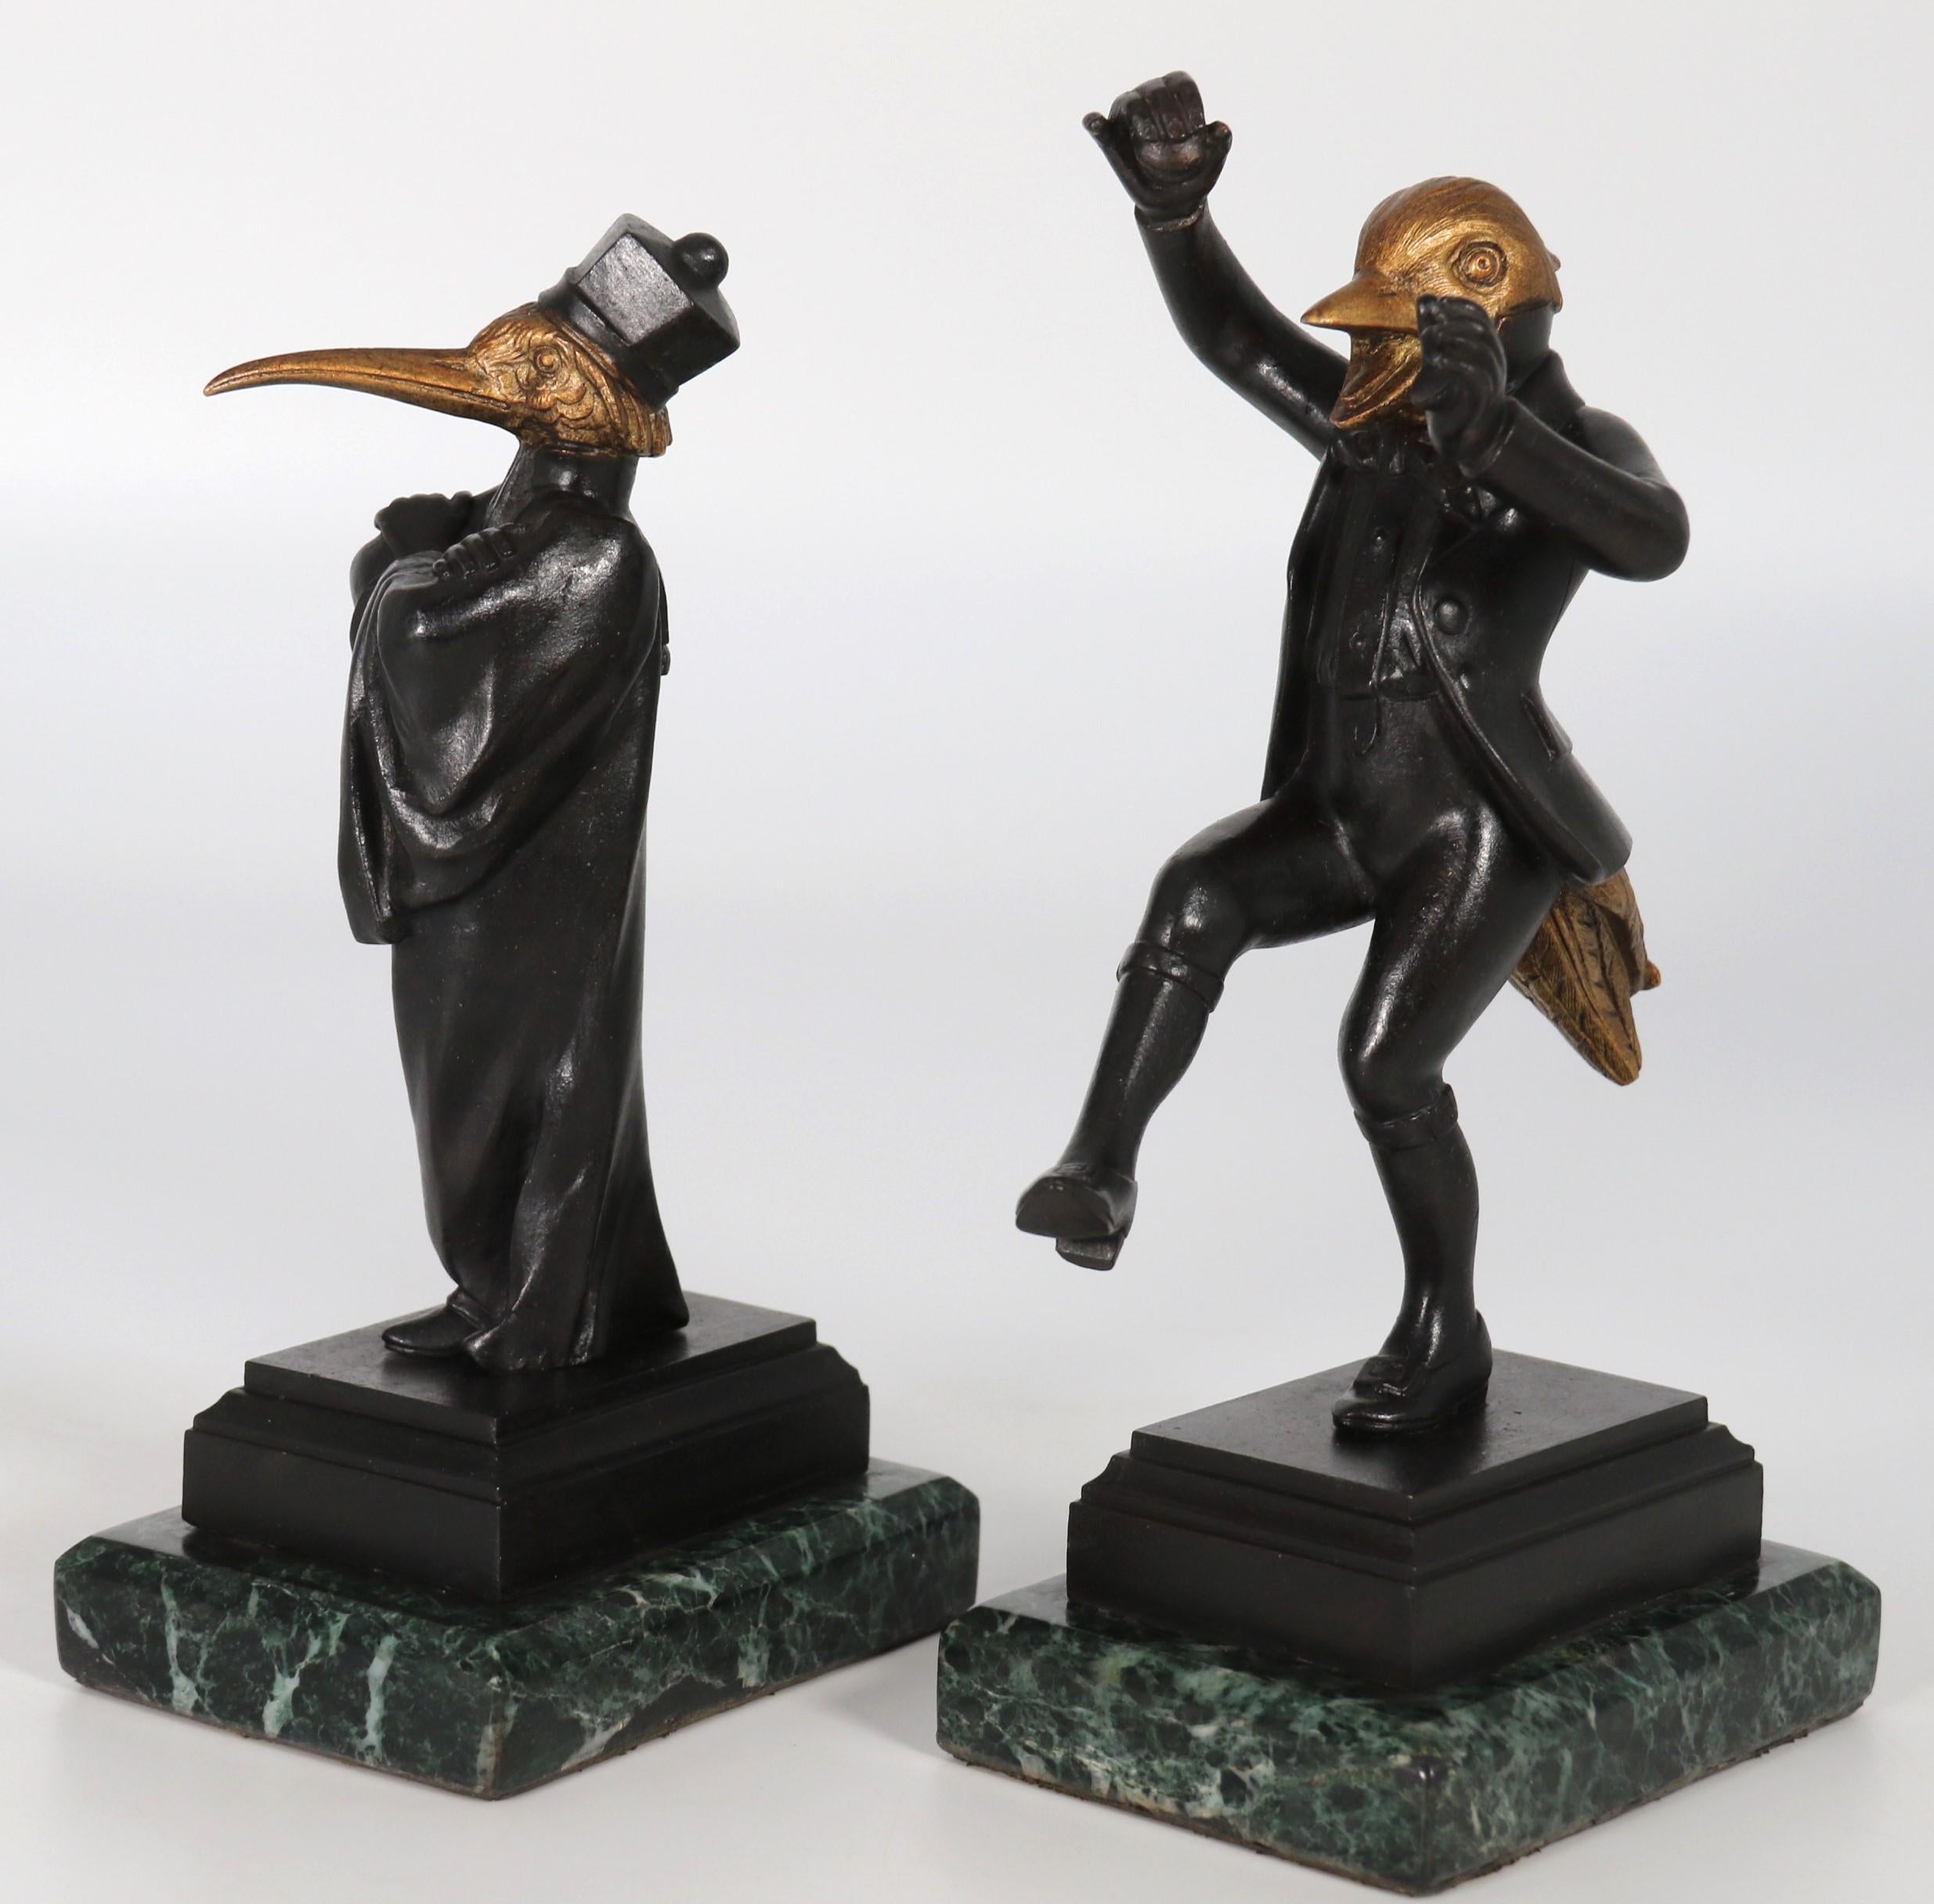 Une paire très inhabituelle de figurines en bronze de la fin du XIXe siècle représentant des caricatures d'un héron et d'un canard colvert, chacun avec un corps humain comprenant le torse, les jambes et les bras,  Avec une tête d'oiseau et des